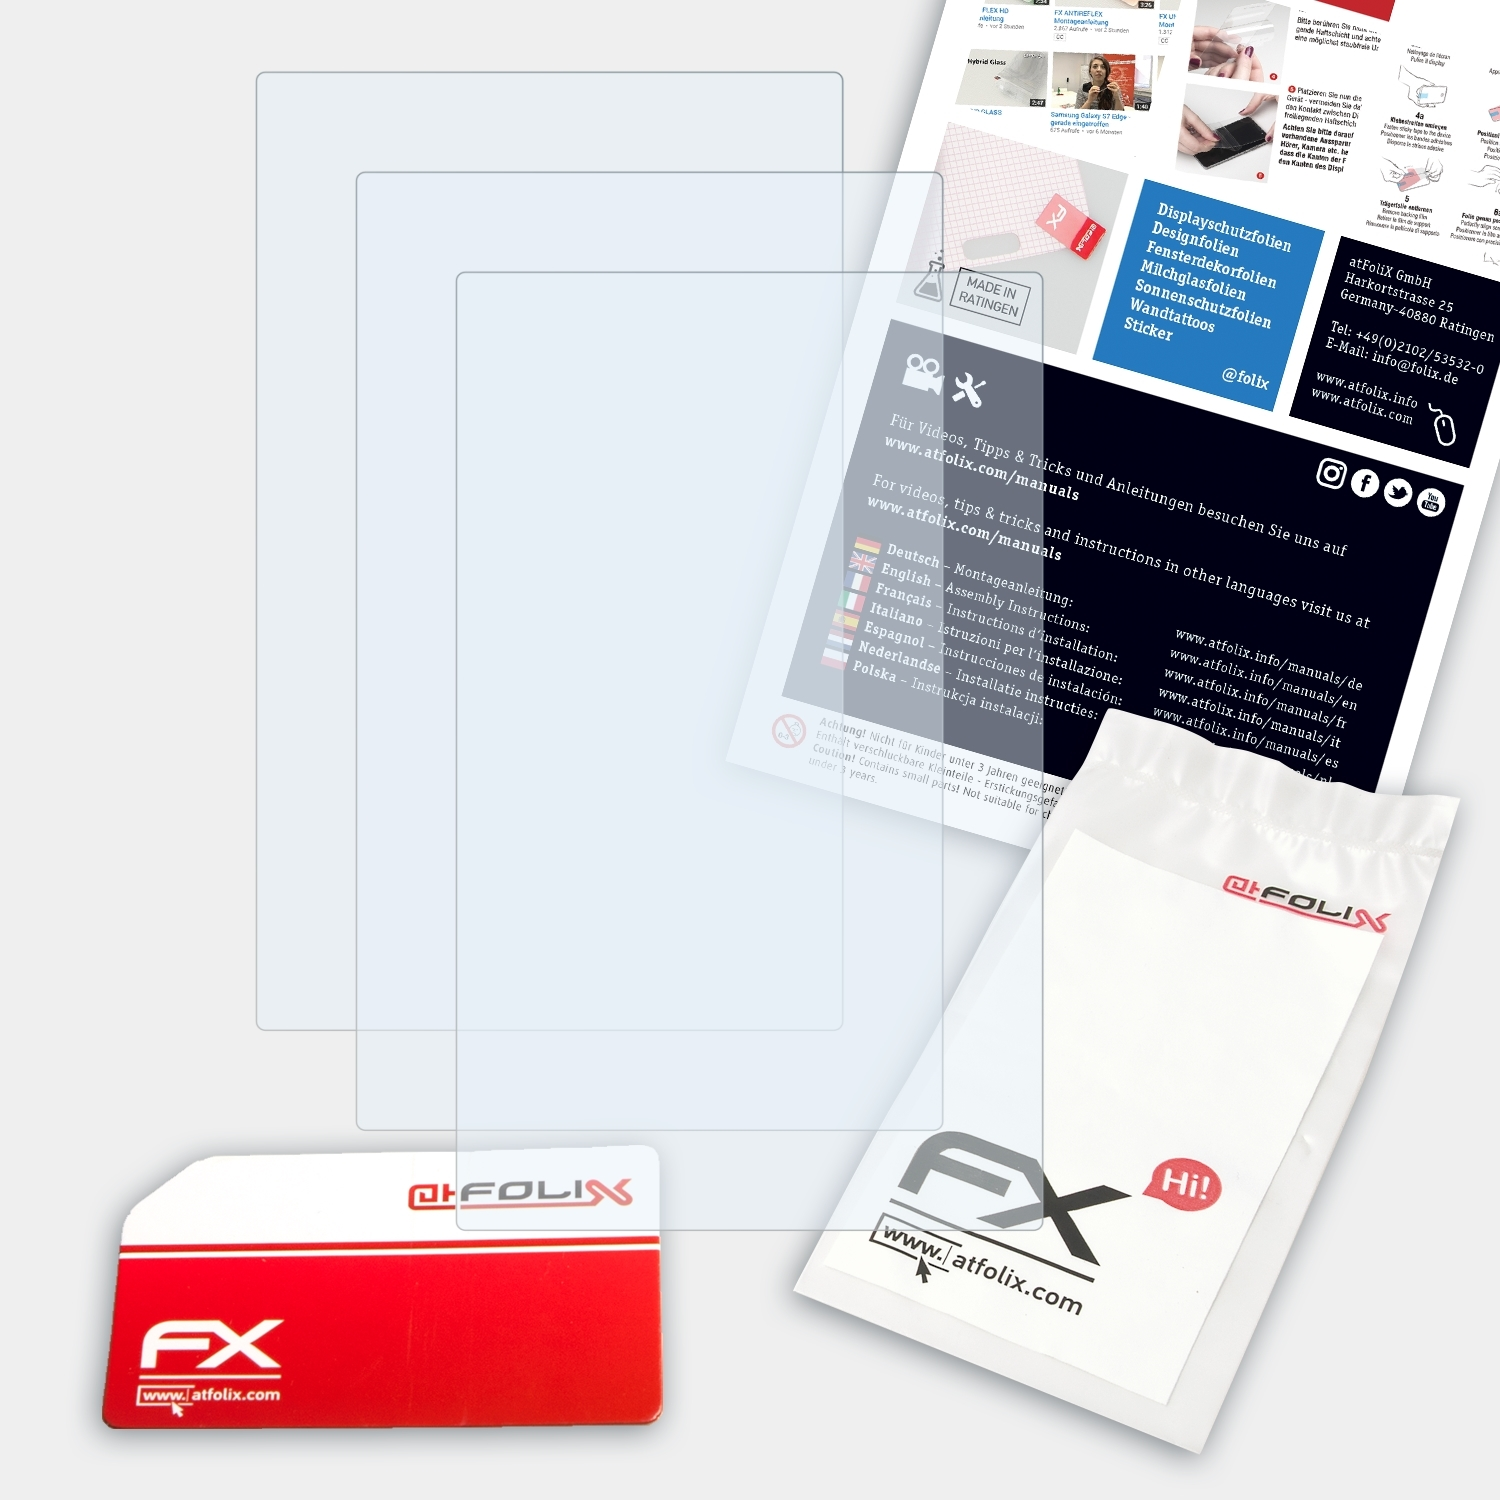 ATFOLIX 3x FX-Clear Inch)) G3X Displayschutz(für Garmin Touch (7